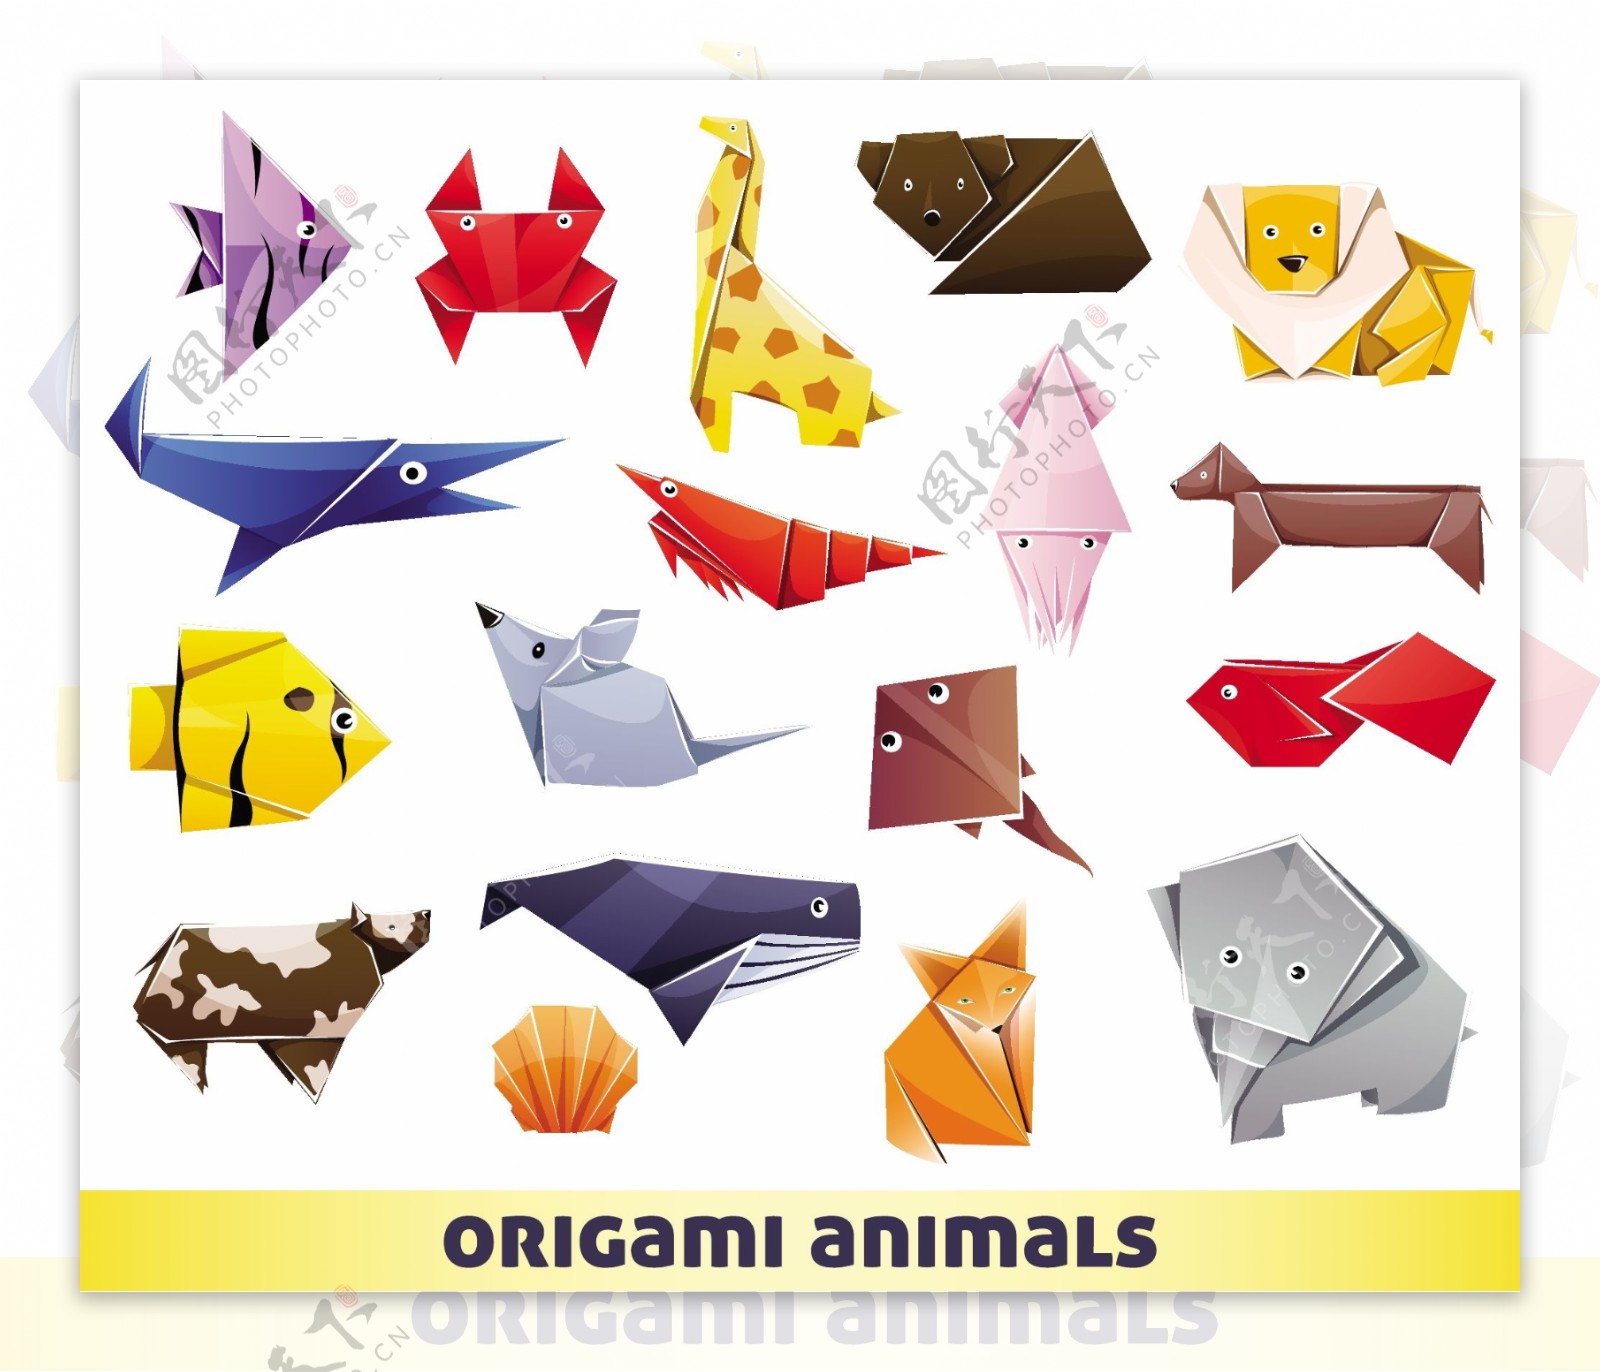 折纸动物背景矢量素材